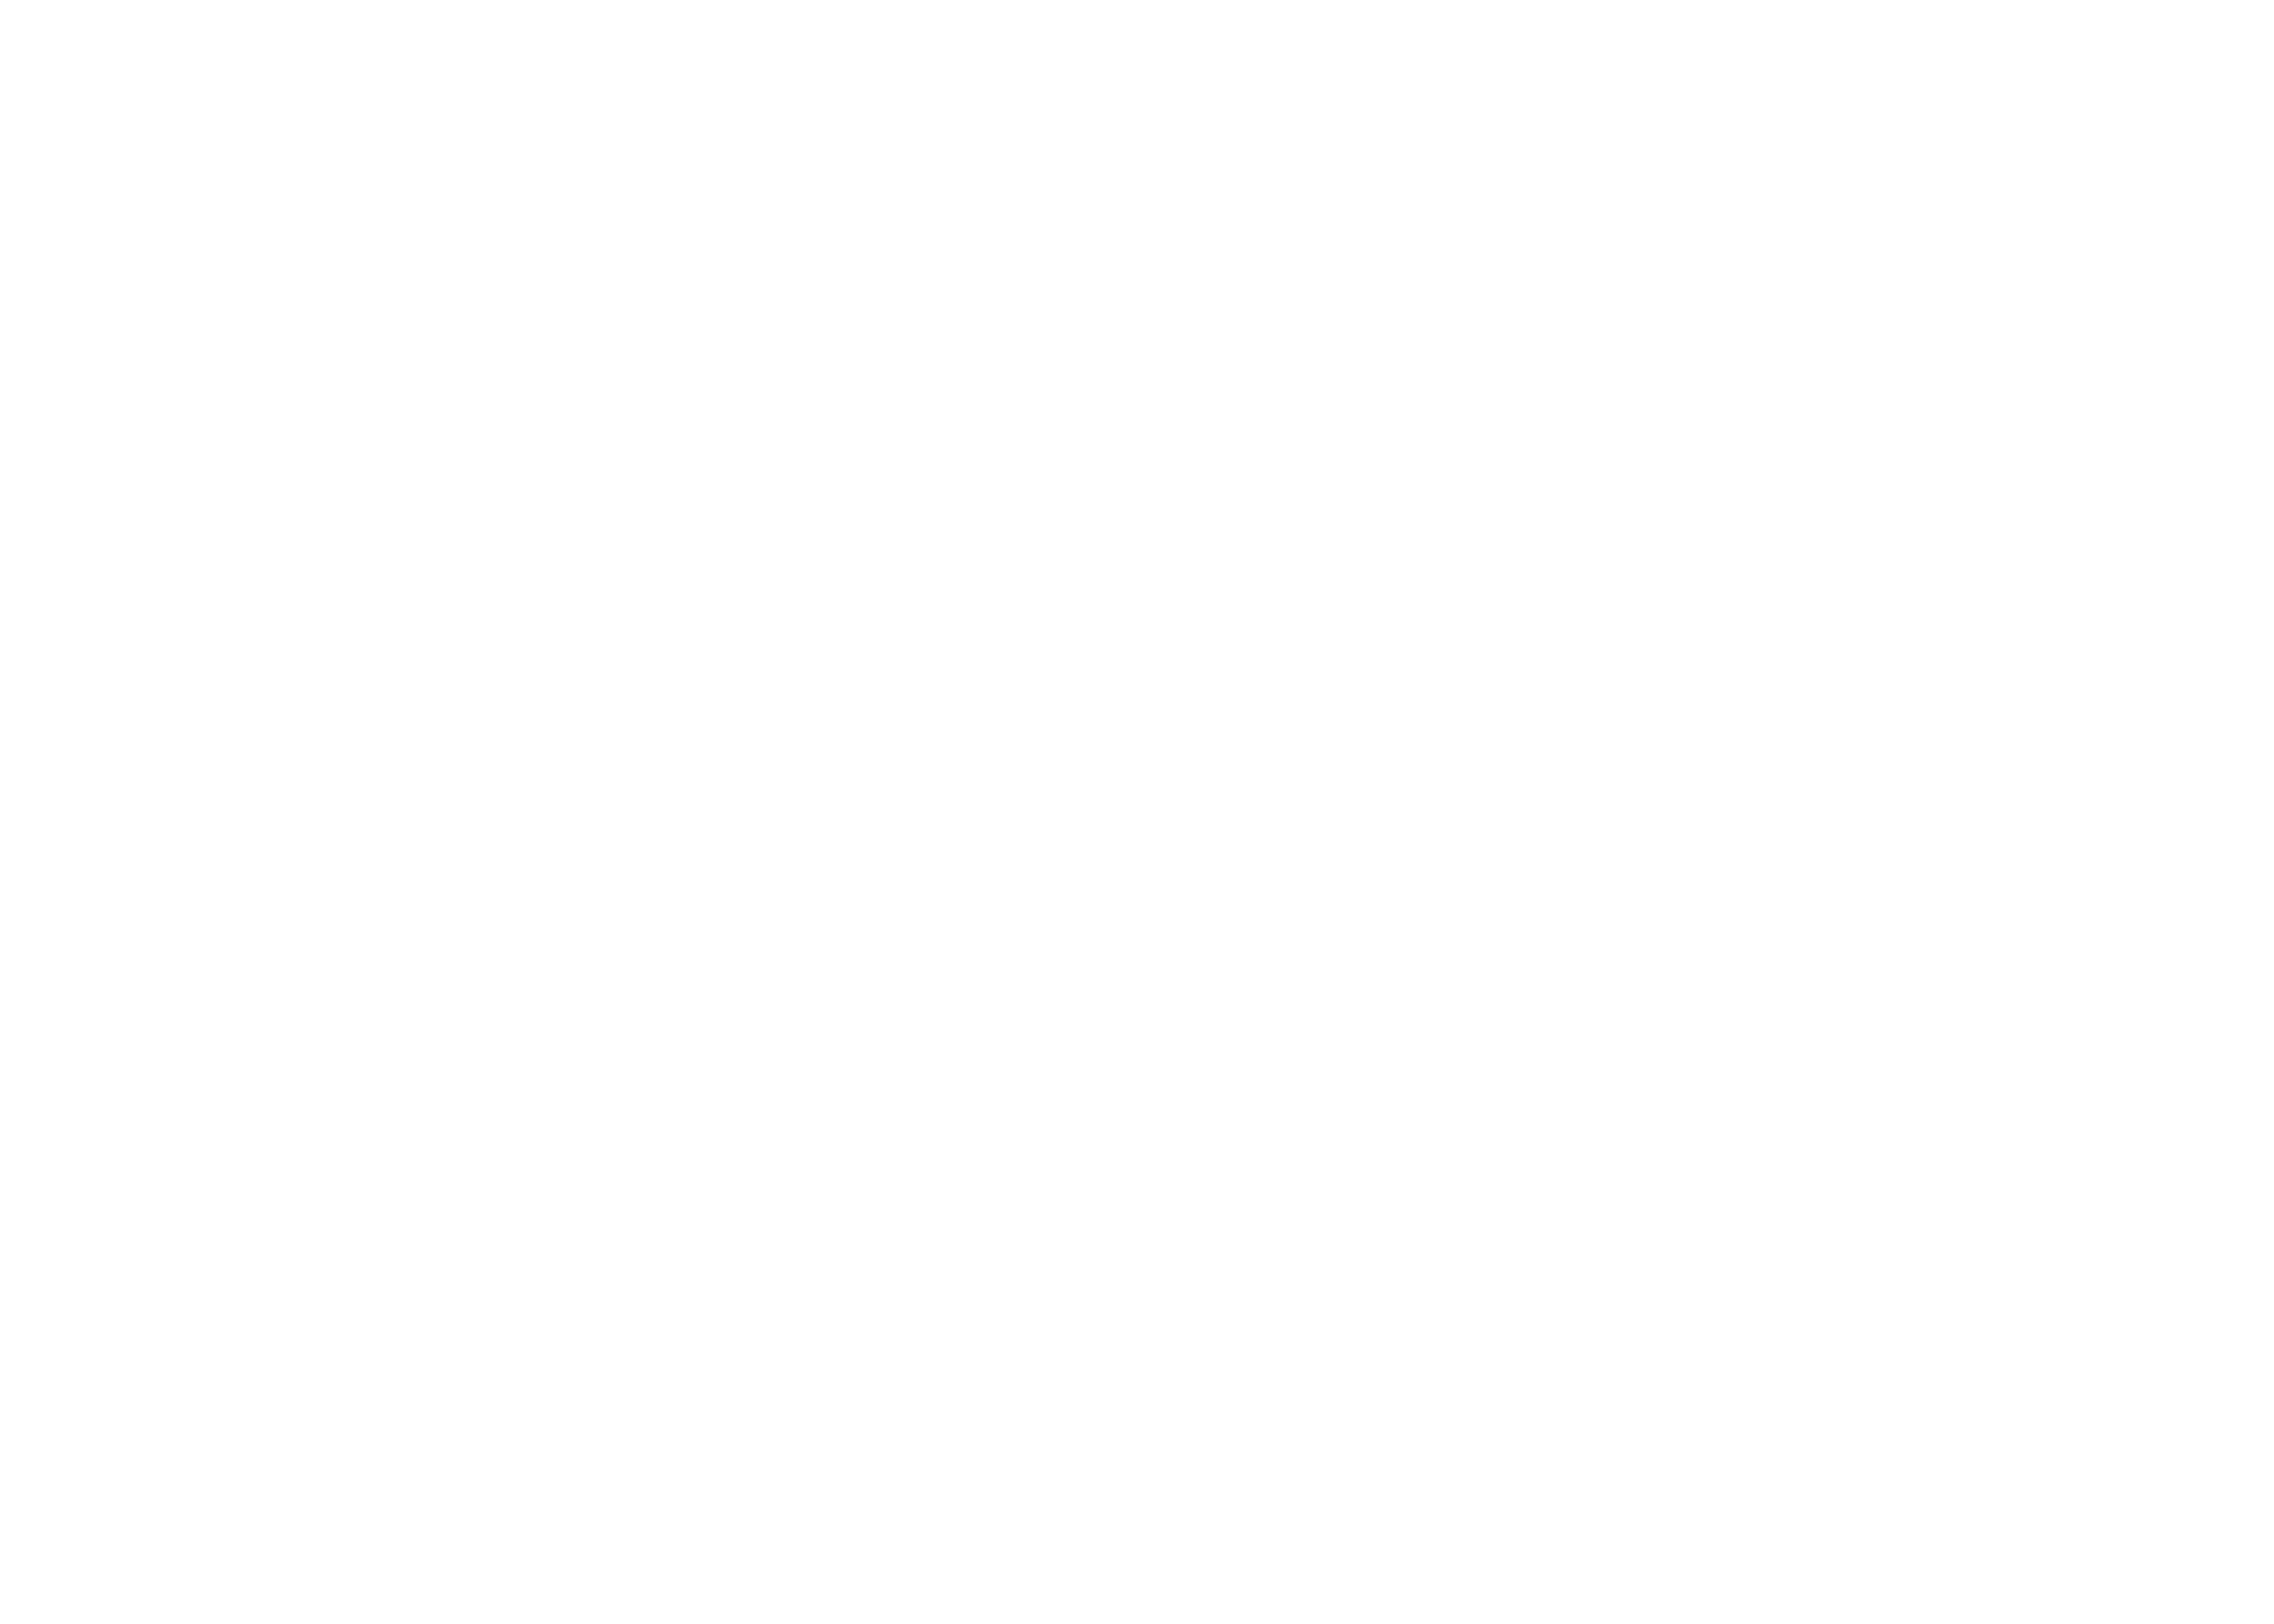 HOOPSTARS BASKETBALL GROUP